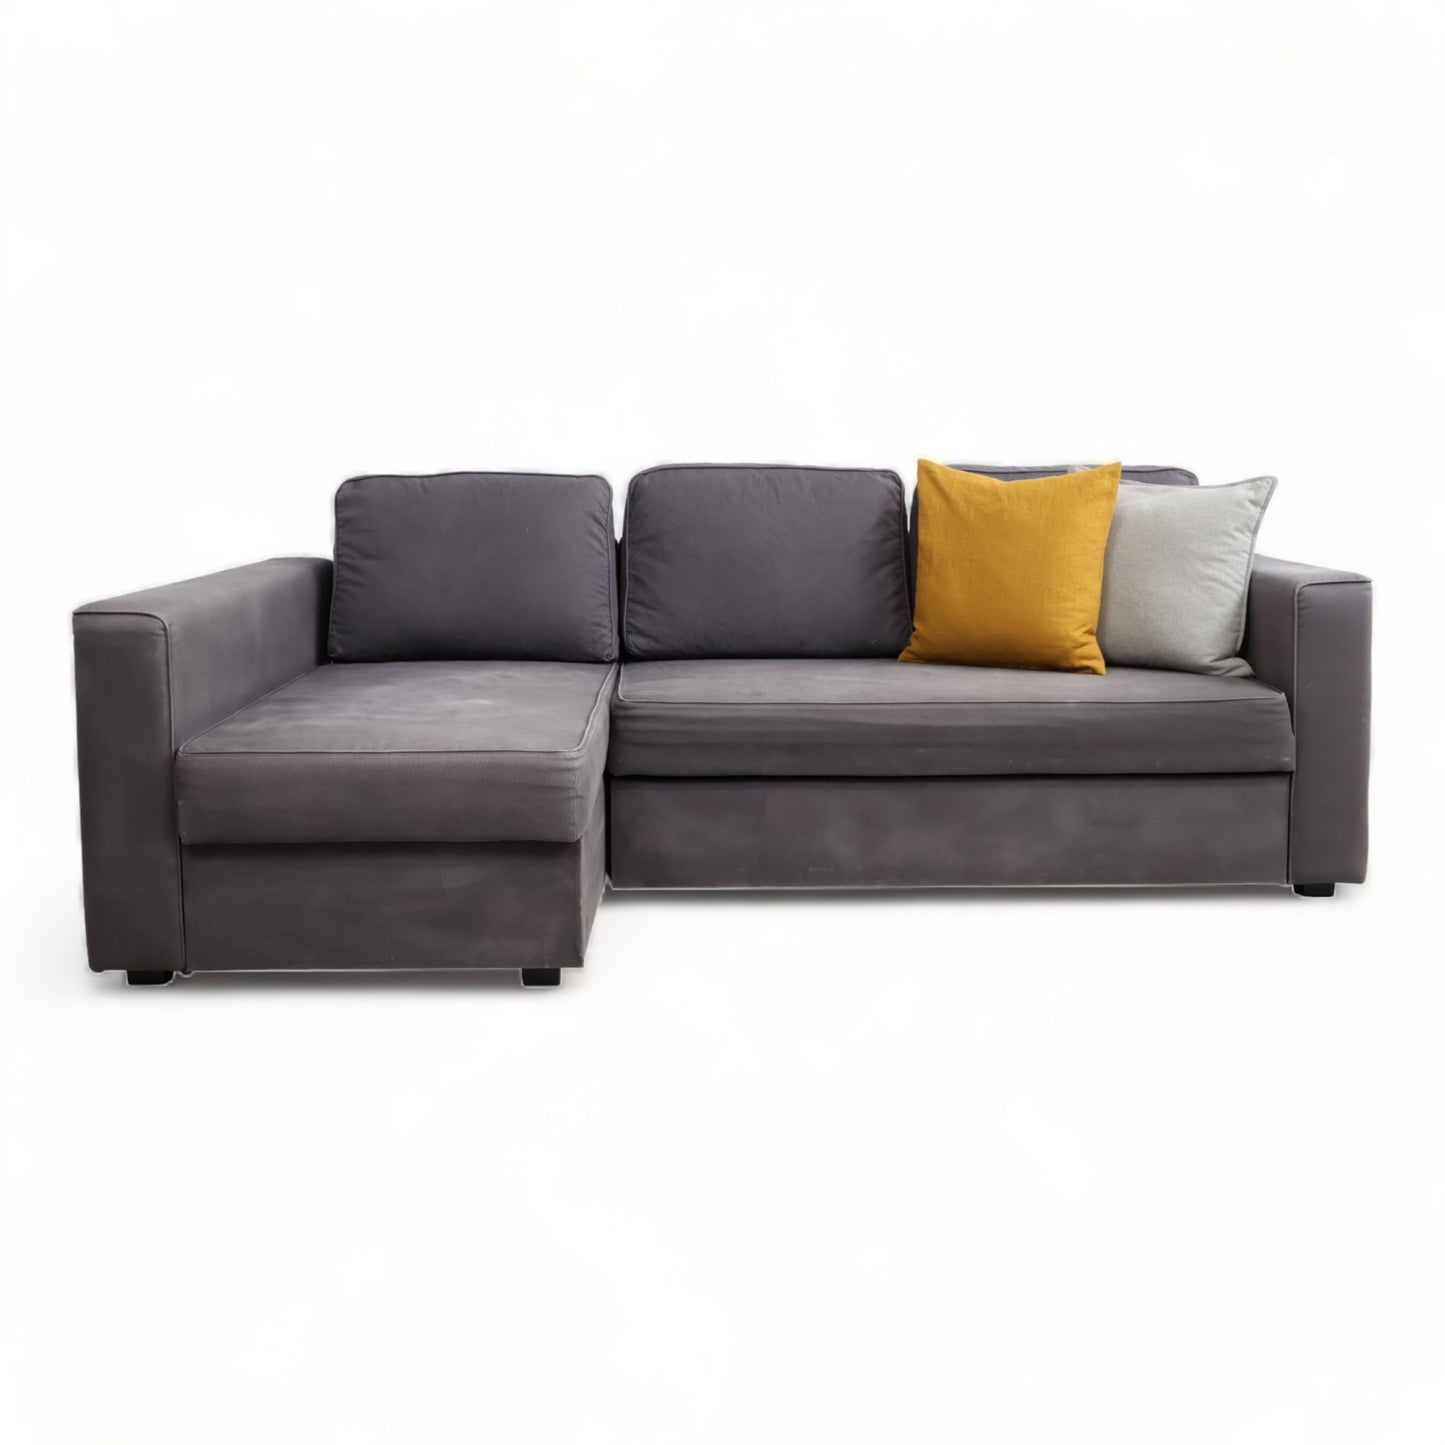 Nyrenset | Mørk grå IKEA sovesofa